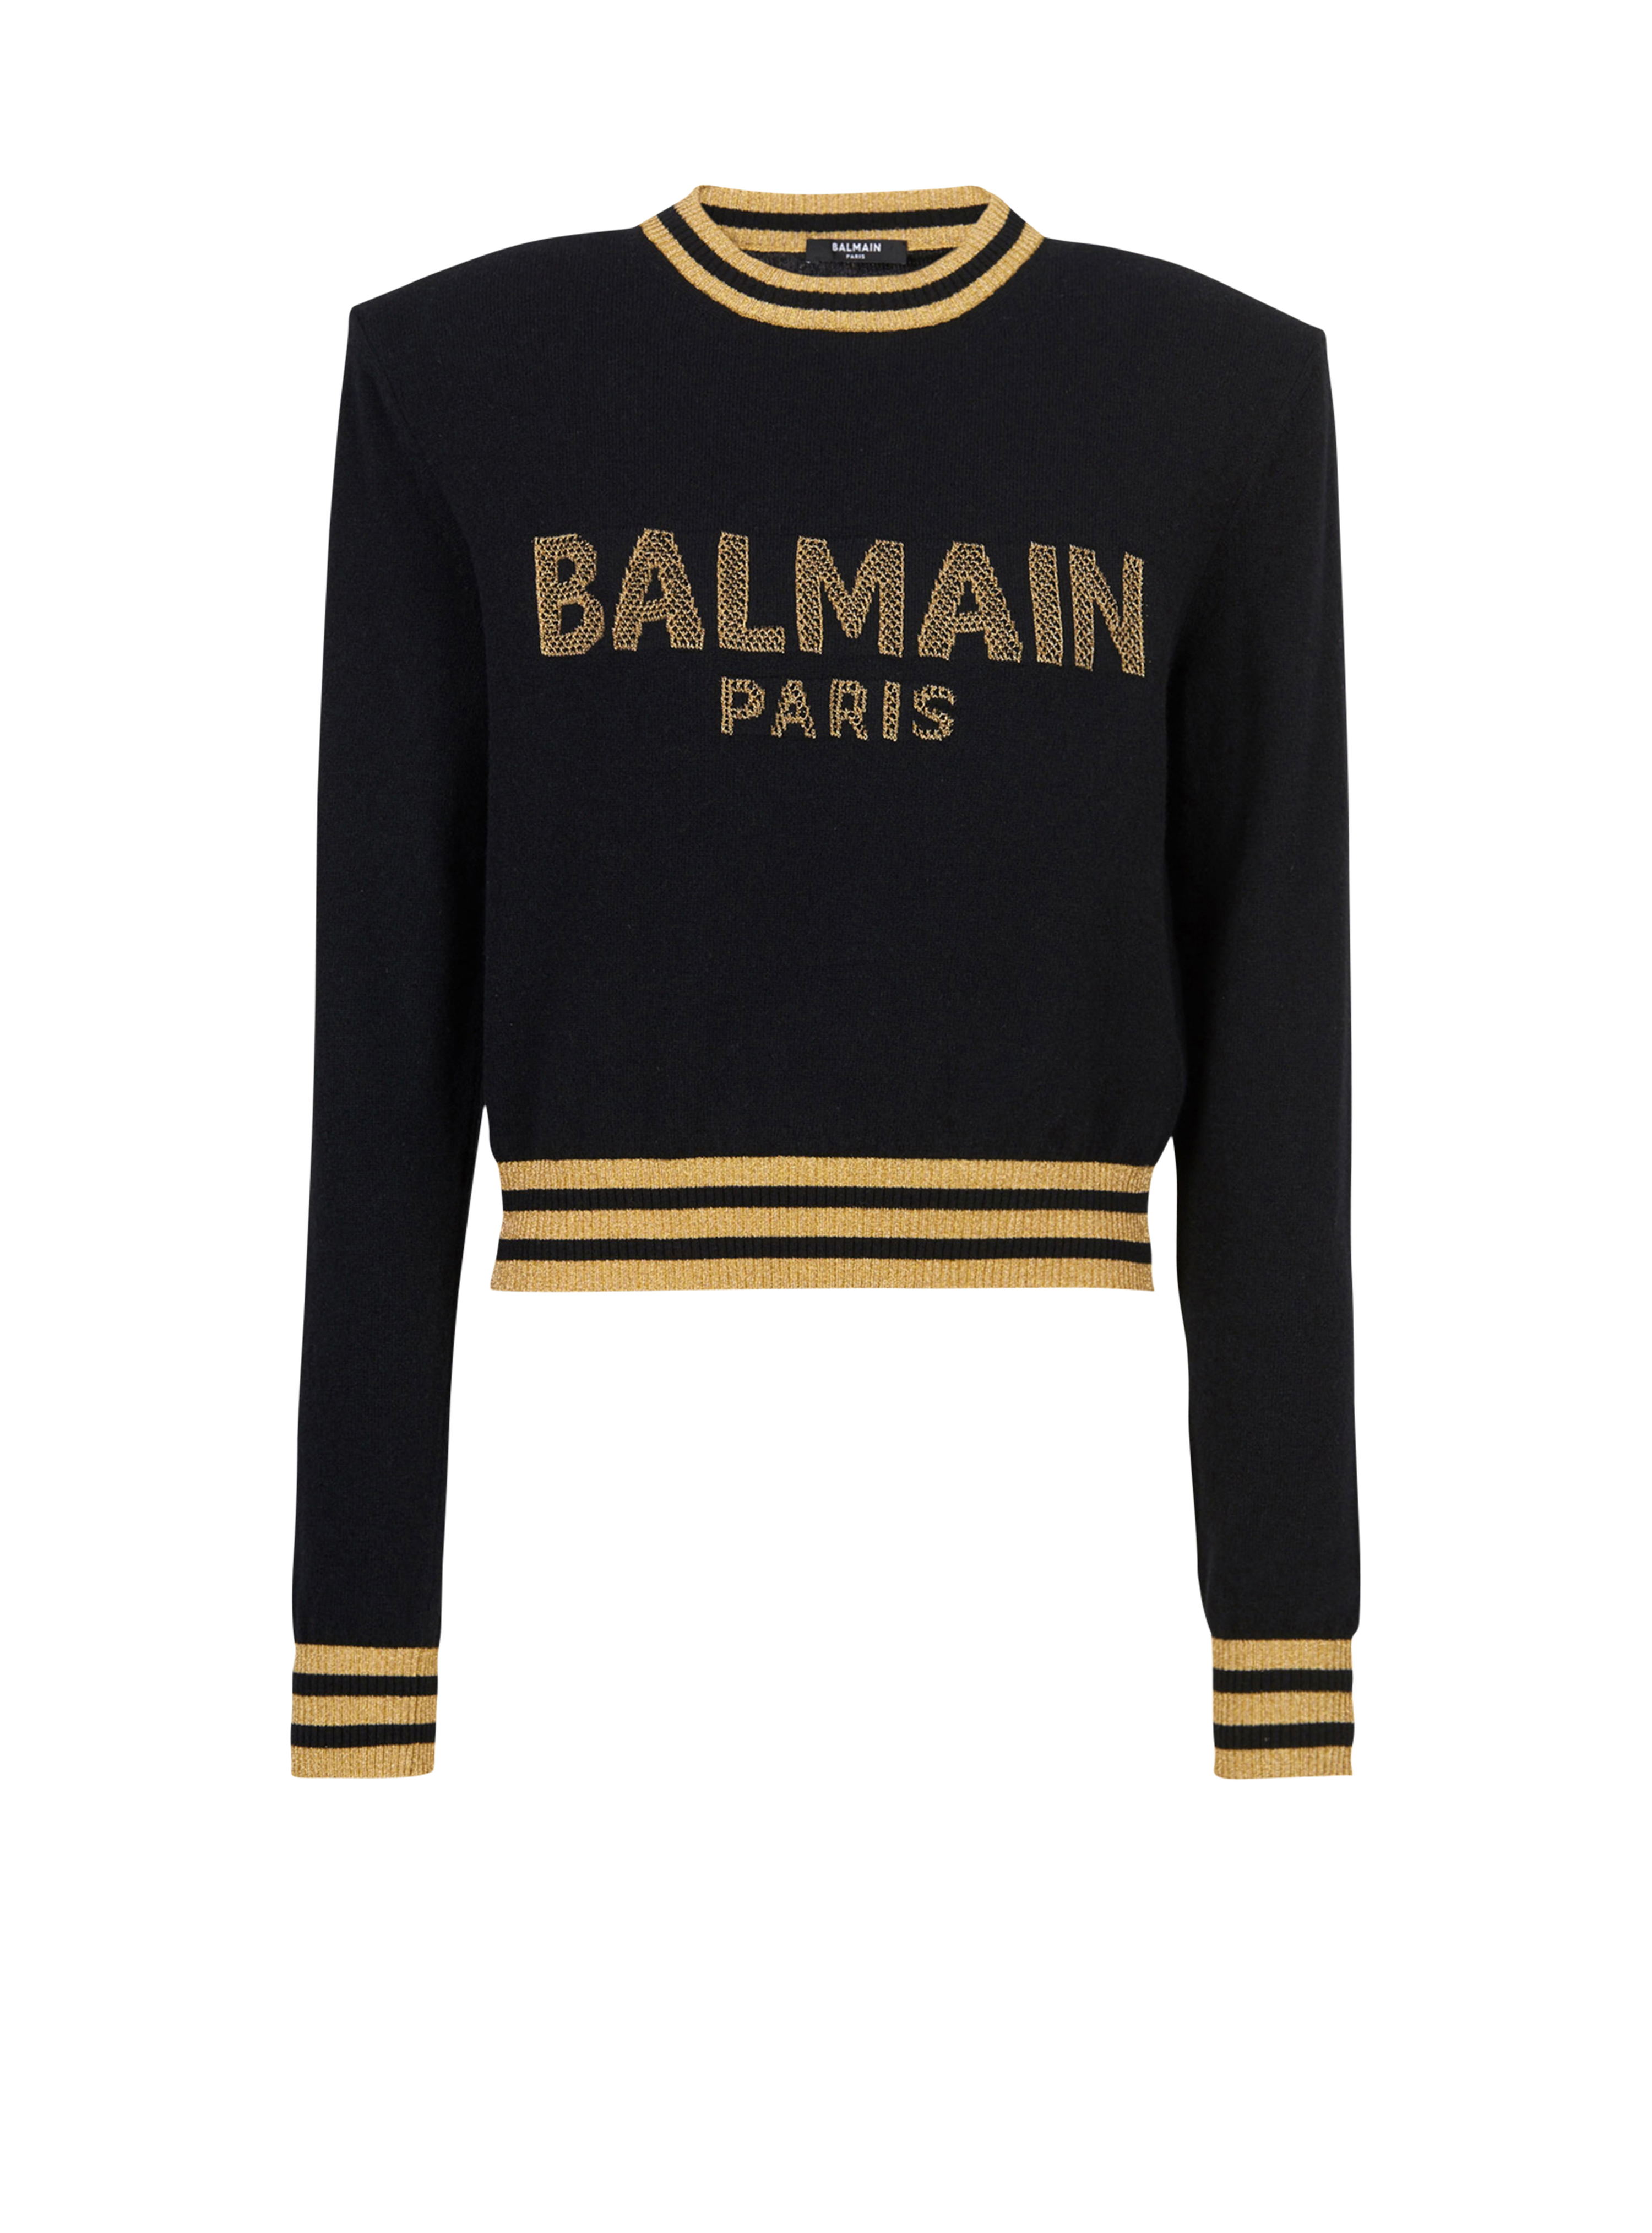 Cropped wool sweatshirt with gold Balmain logo, black